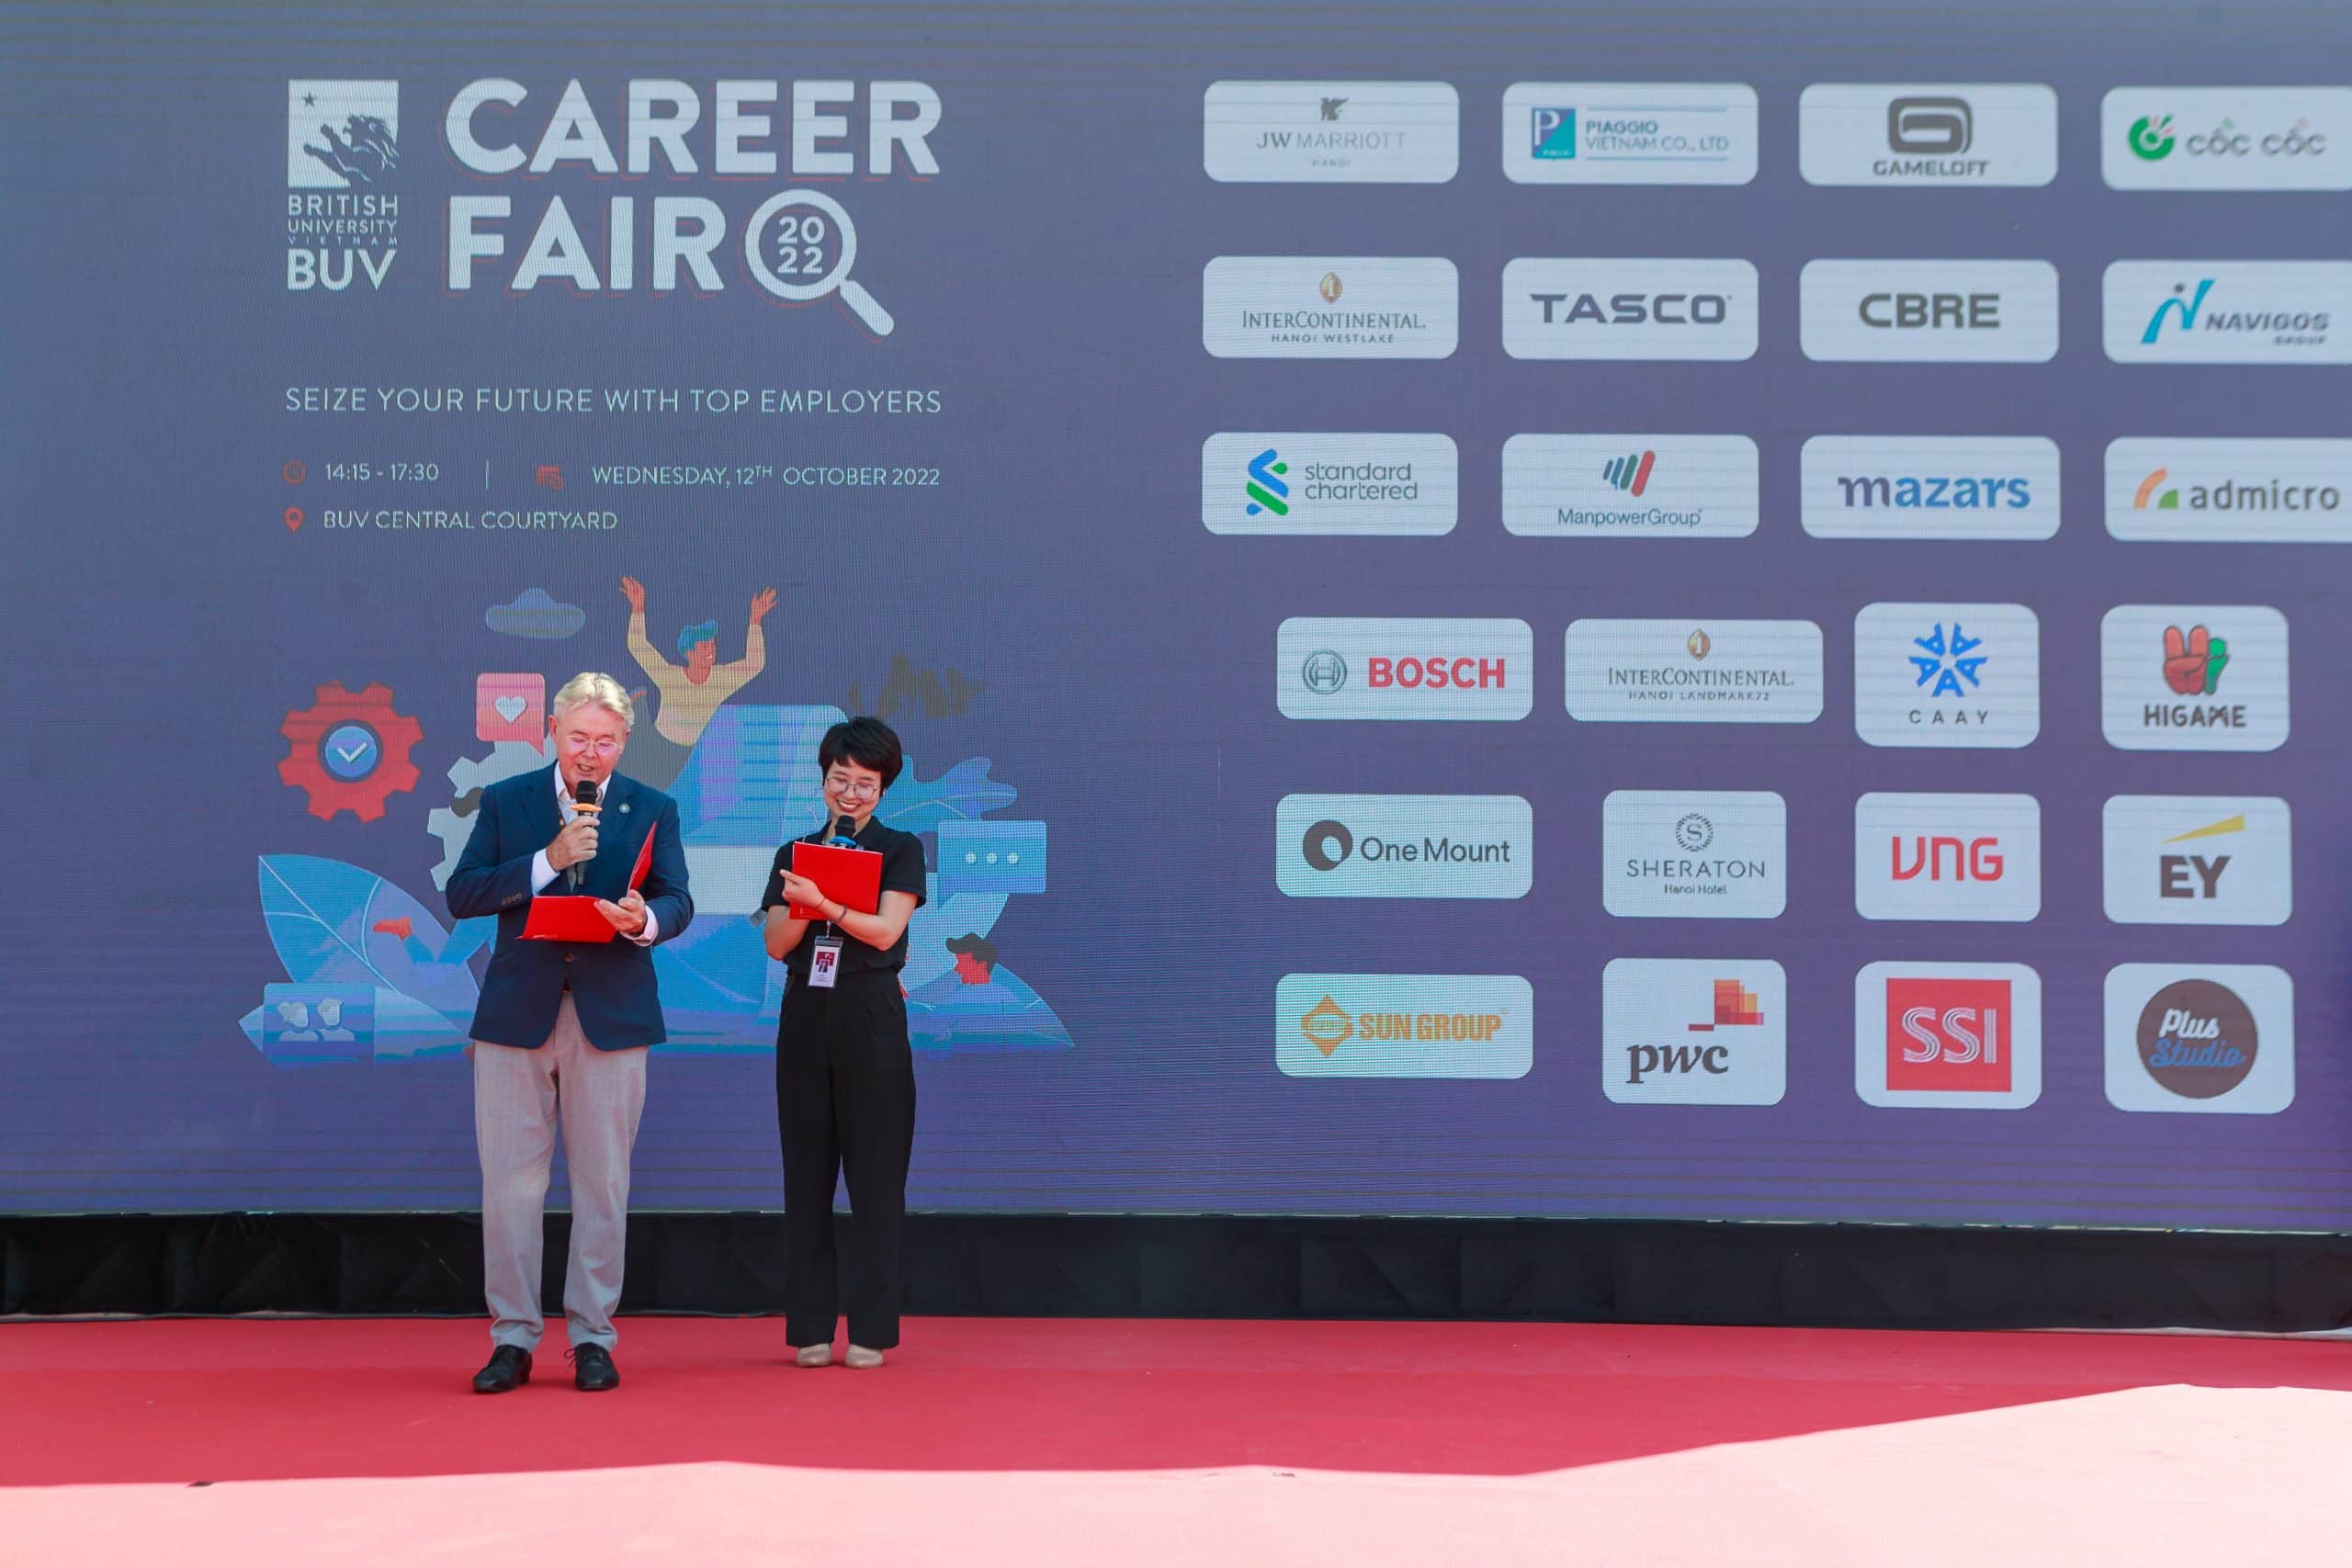 BUV Career Fair 2022: Nắm bắt cơ hội làm việc tại các tập đoàn danh tiếng Trong nước và Quốc tế